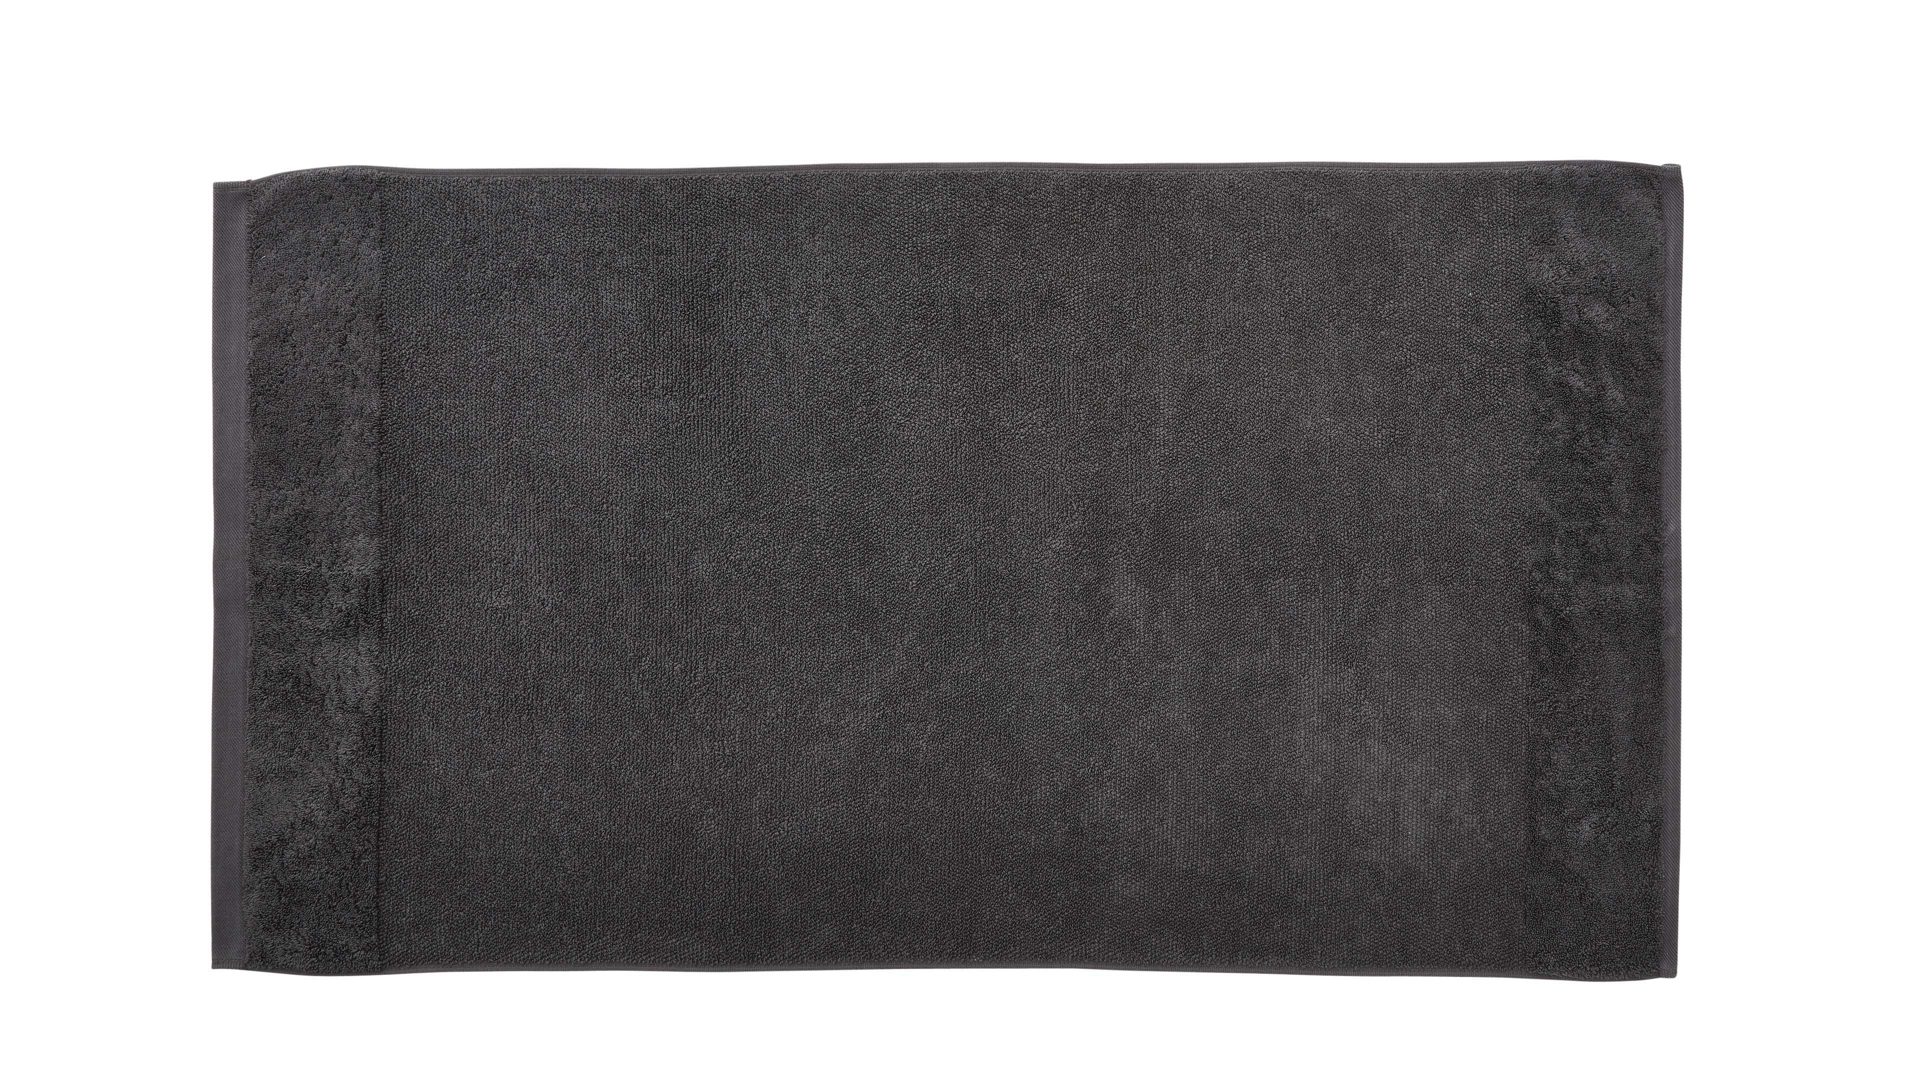 Handtuch Interliving aus Naturfaser in Anthrazit Interliving Handtuch Serie 9108 - Handtuch anthrazitfarbene Baumwolle  - ca. 60 x 110 cm